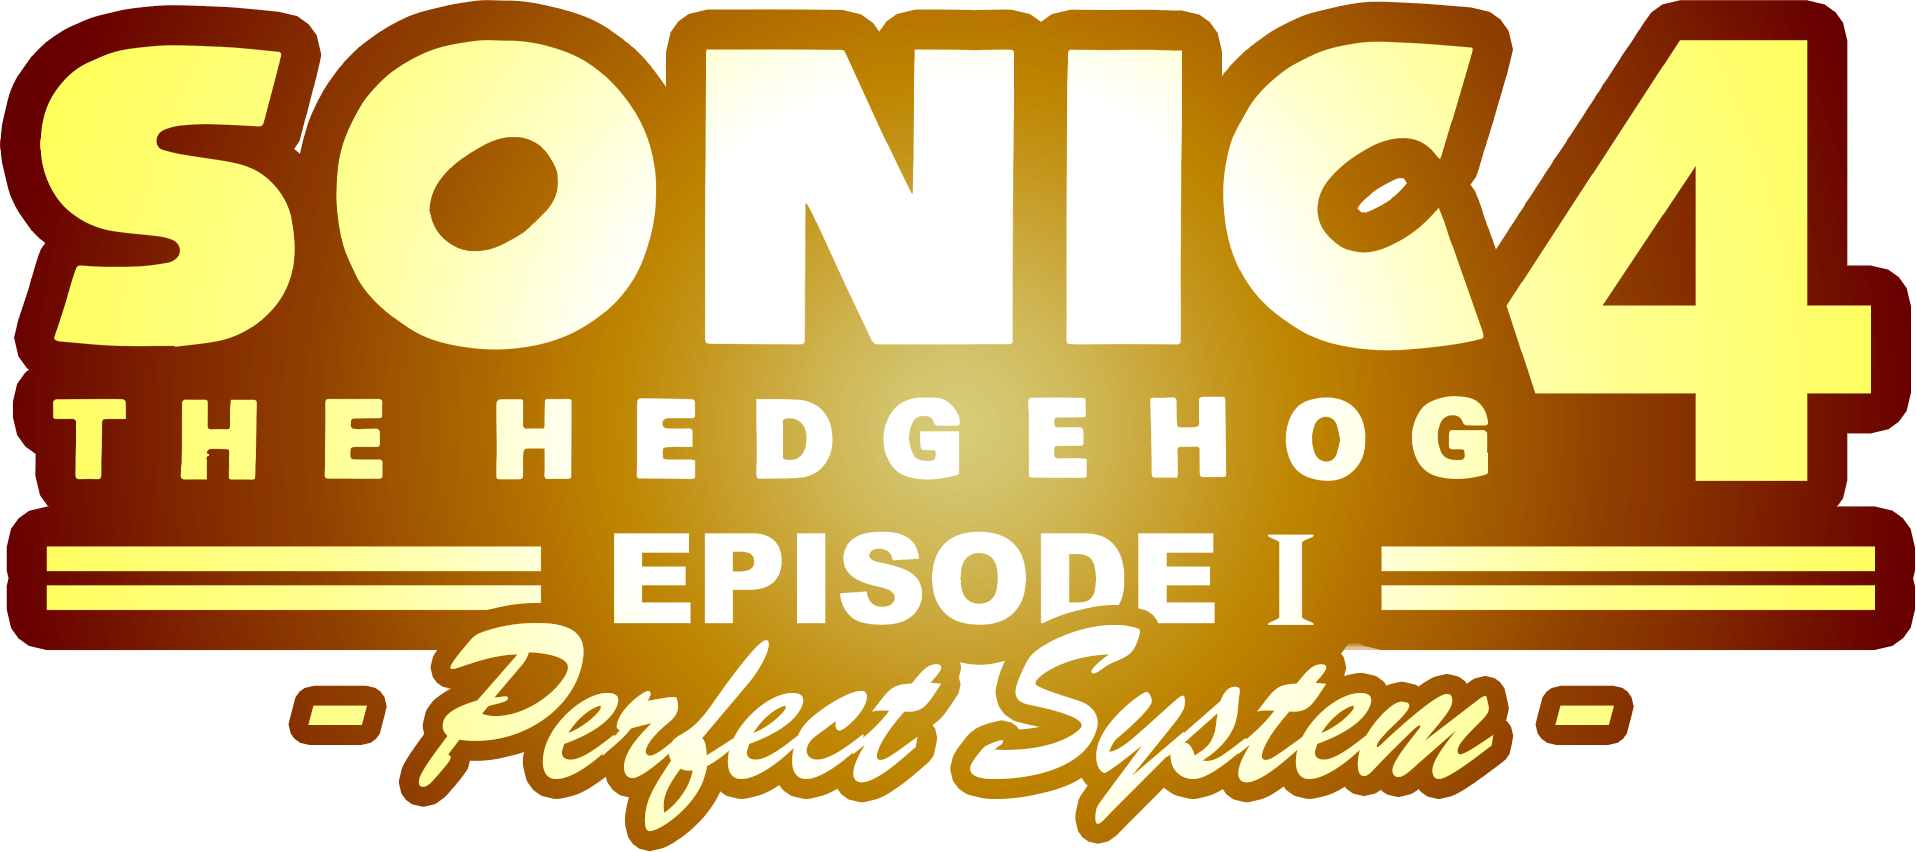 Sonic the Hedgehog 4: Episode I - SteamGridDB